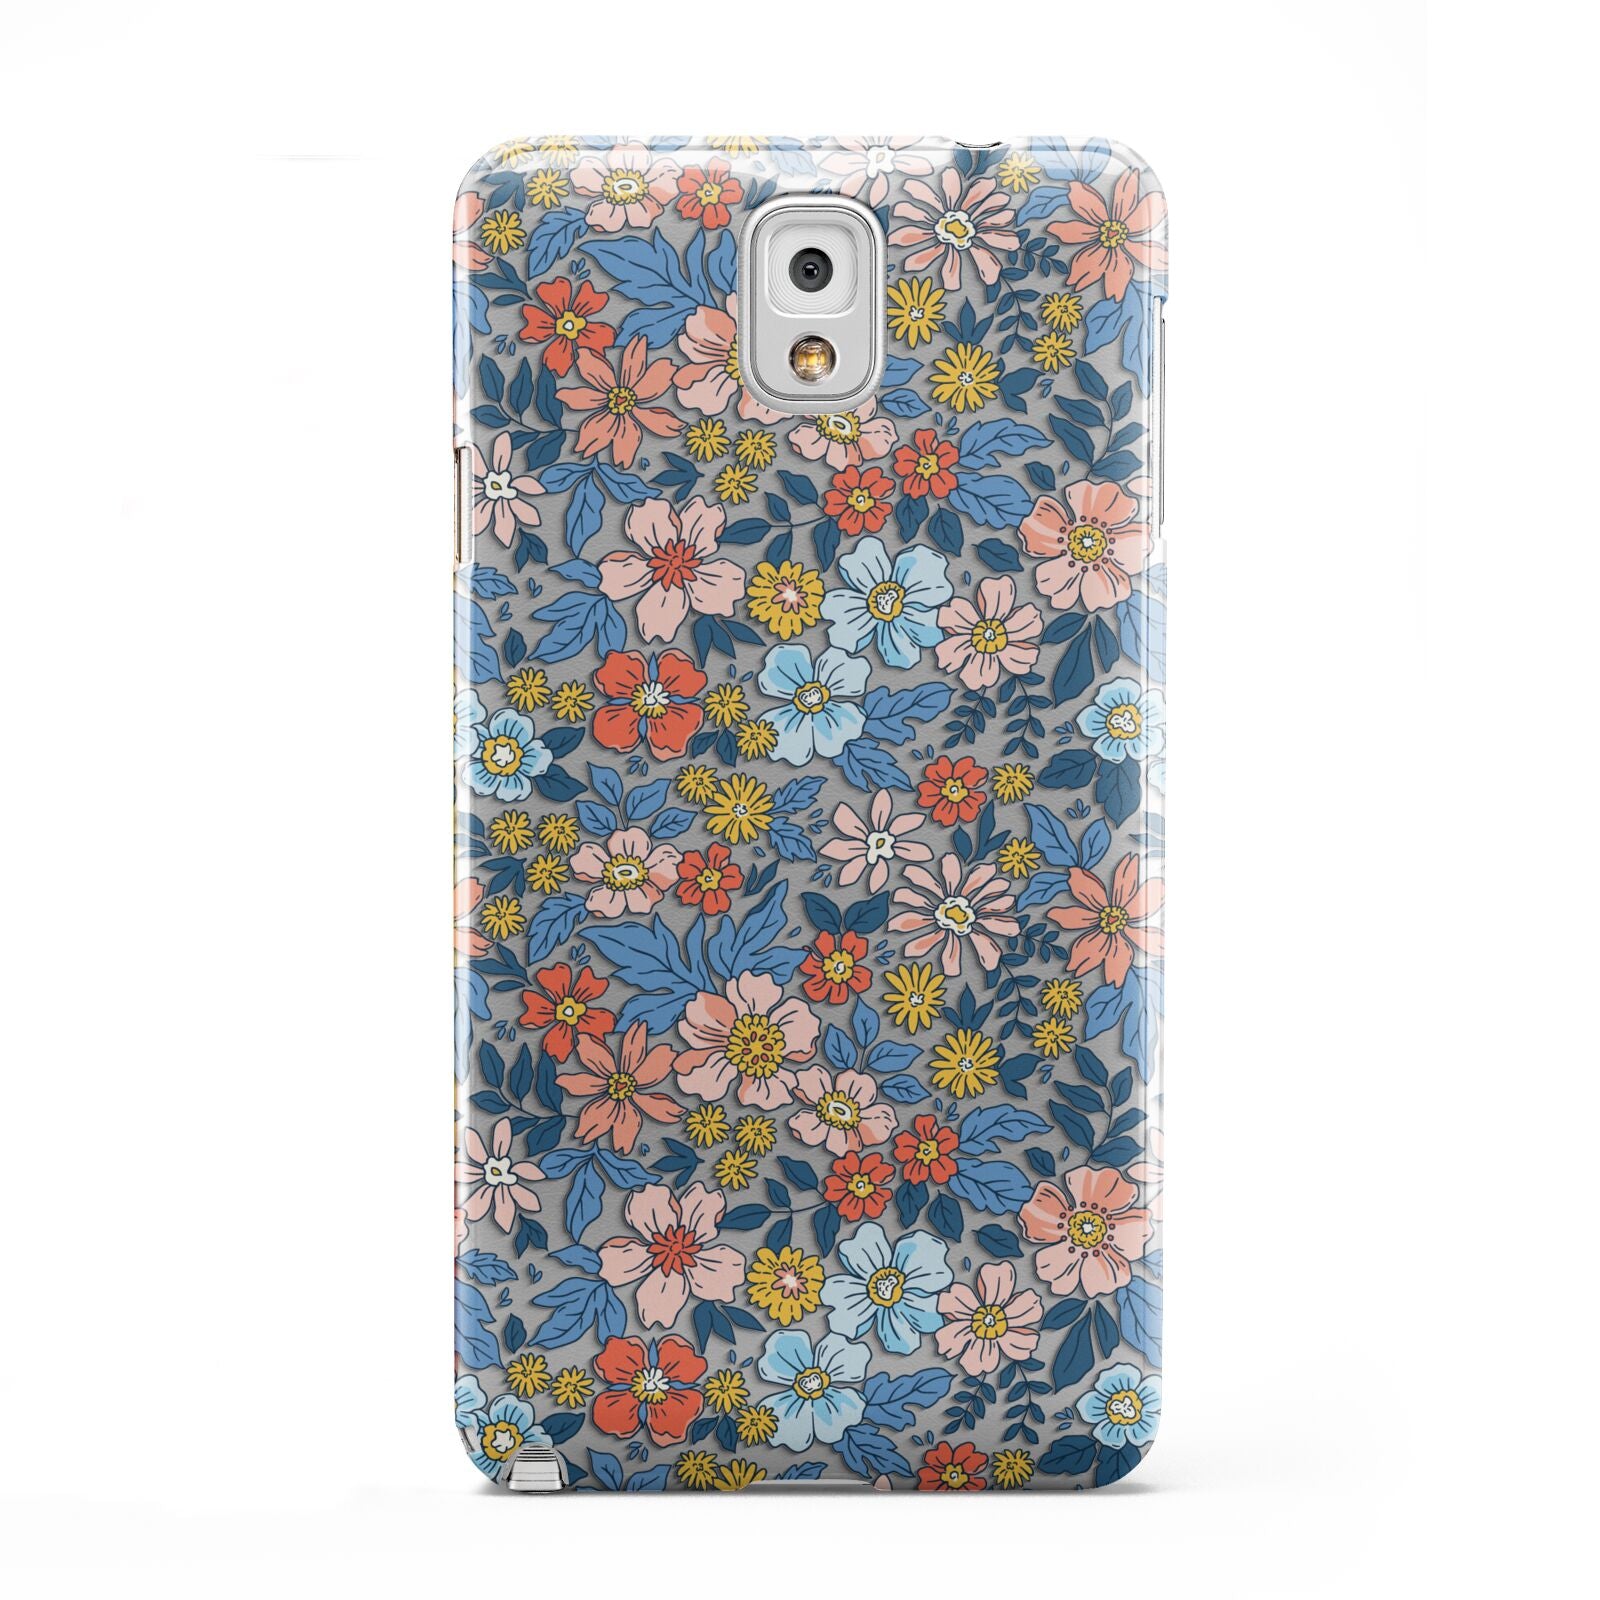 Vintage Flower Samsung Galaxy Note 3 Case